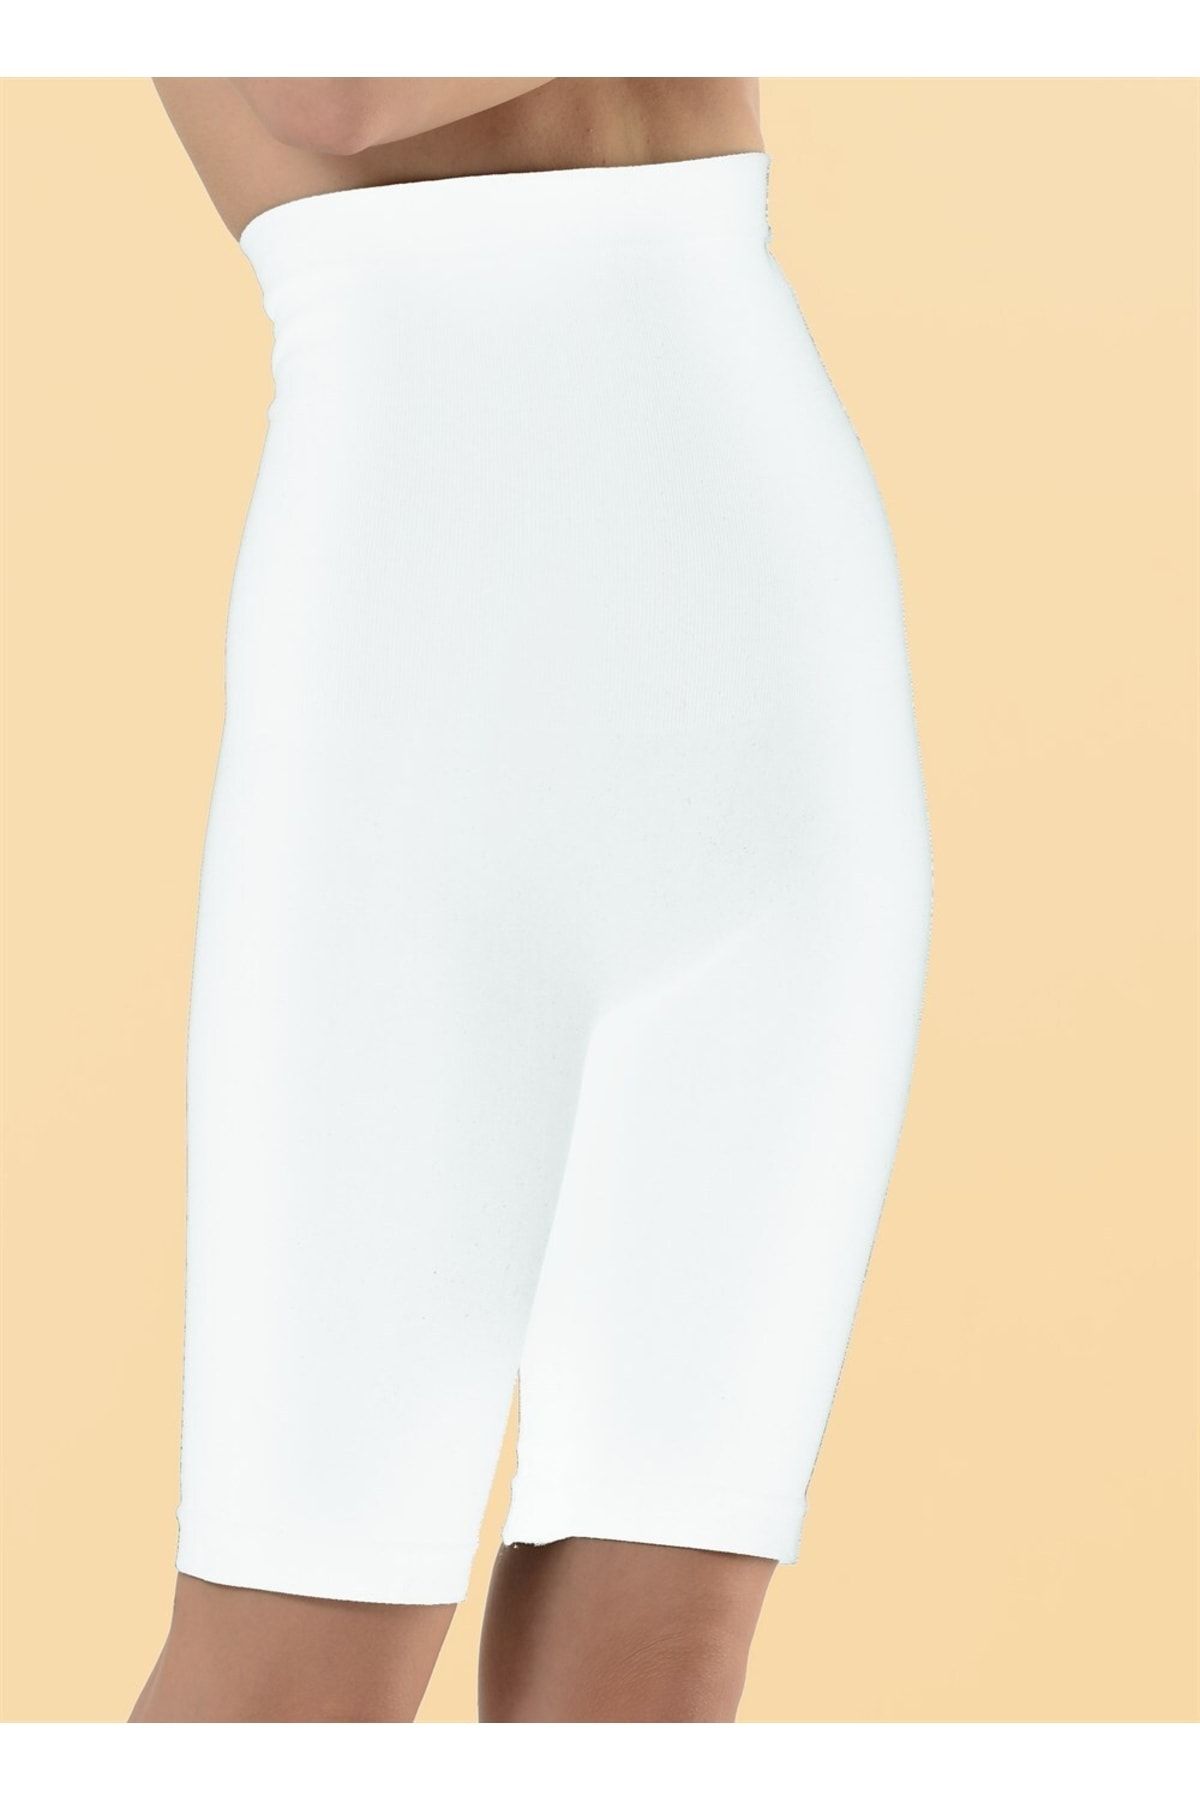 Letti Formfit Beyaz Beden Küçülten Seamless Dikişsiz Mideli Uzun Paçalı Korse Şl905